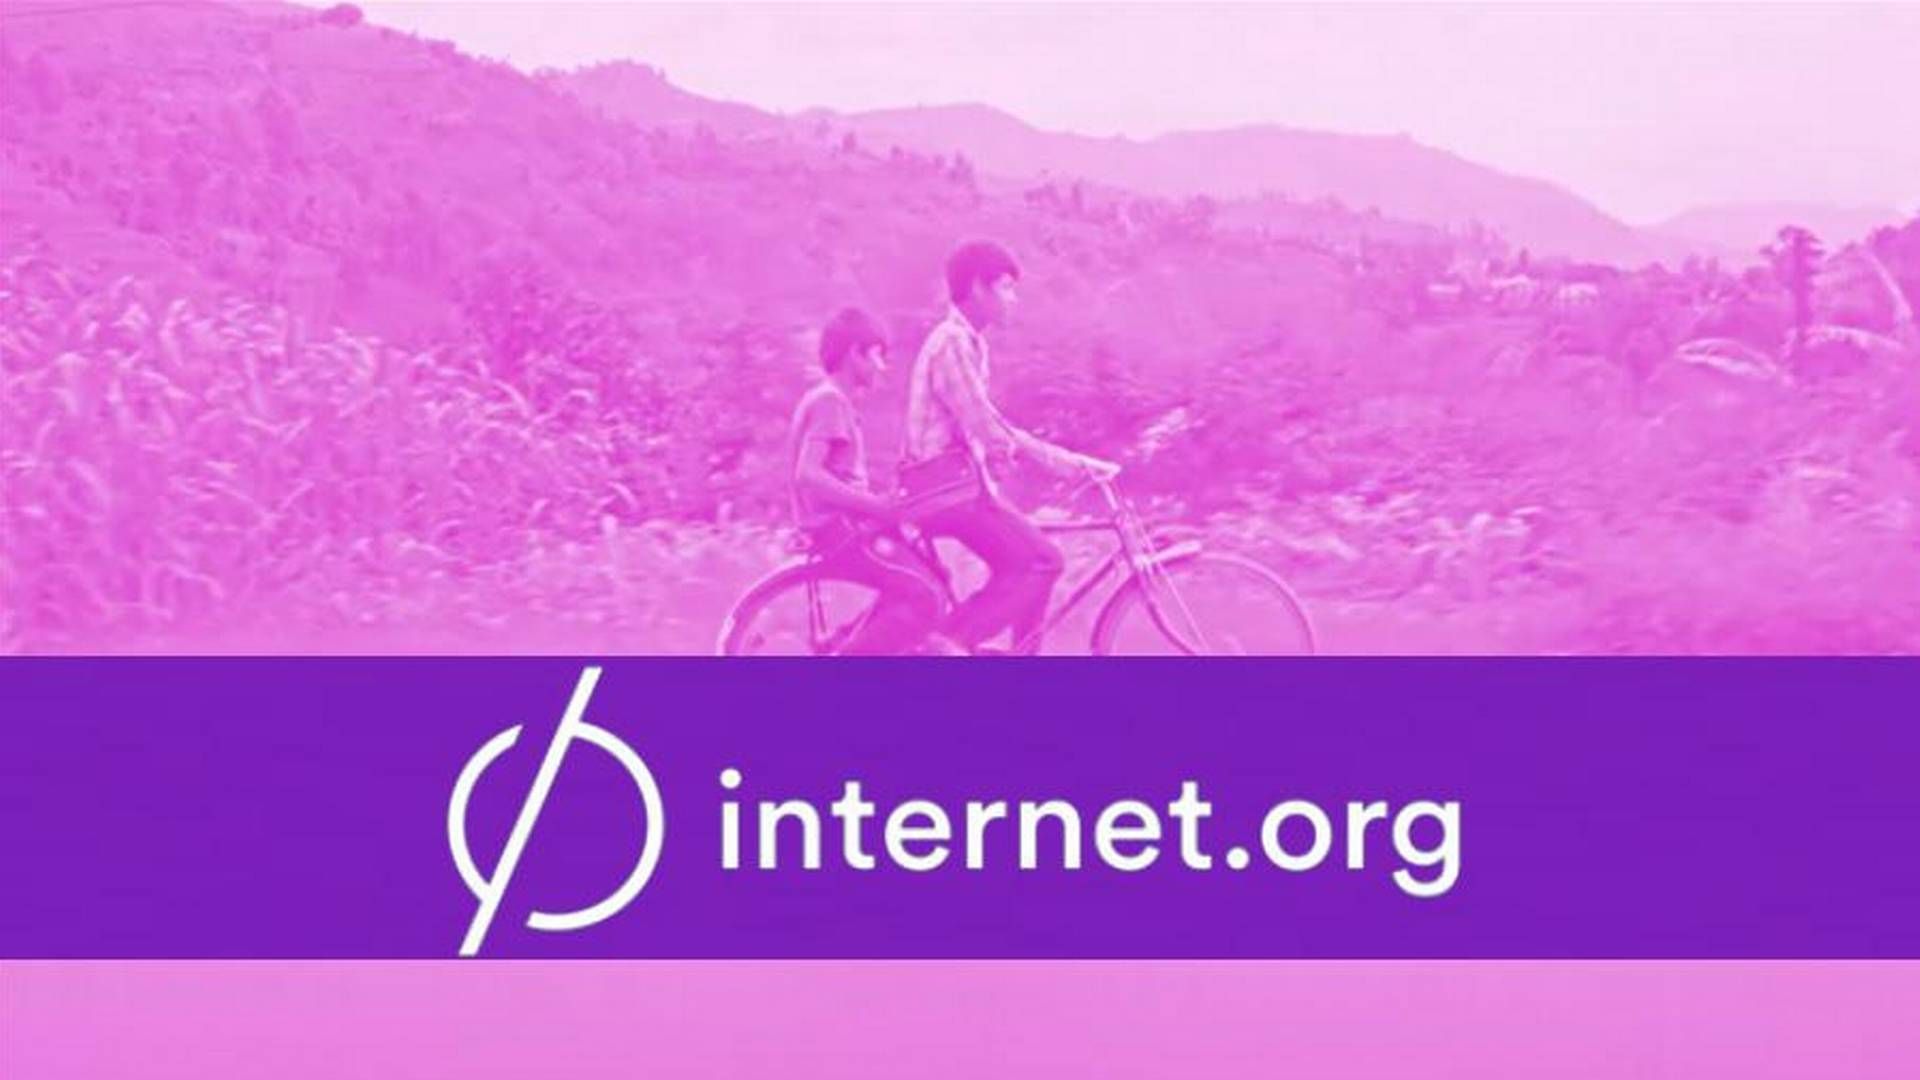 Internet.org giver fattige gratis adgang til udvalgte internet-tjenester, men møder kritik af interesseorganisationer. | Foto: Internet.org/Facebook